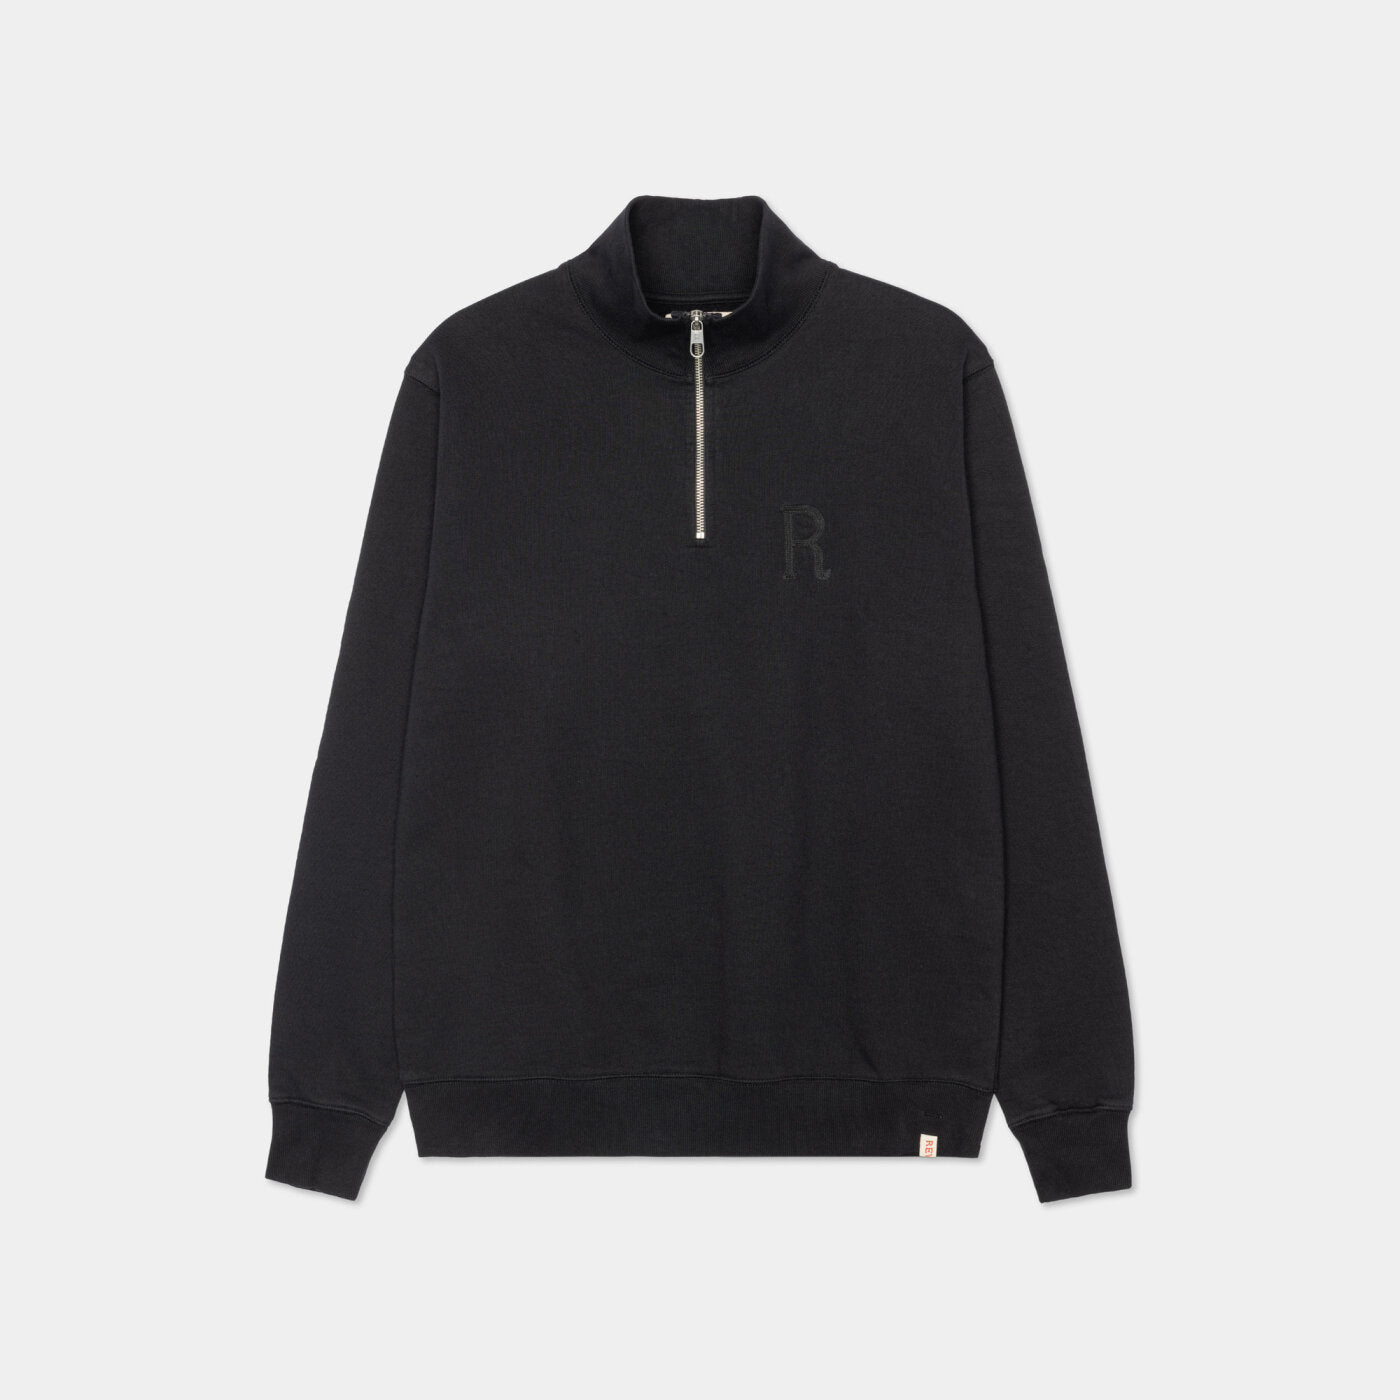 RVLT 2763 Half Zip Sweatshirt - Black - 1 - Tops - Zip Sweaters